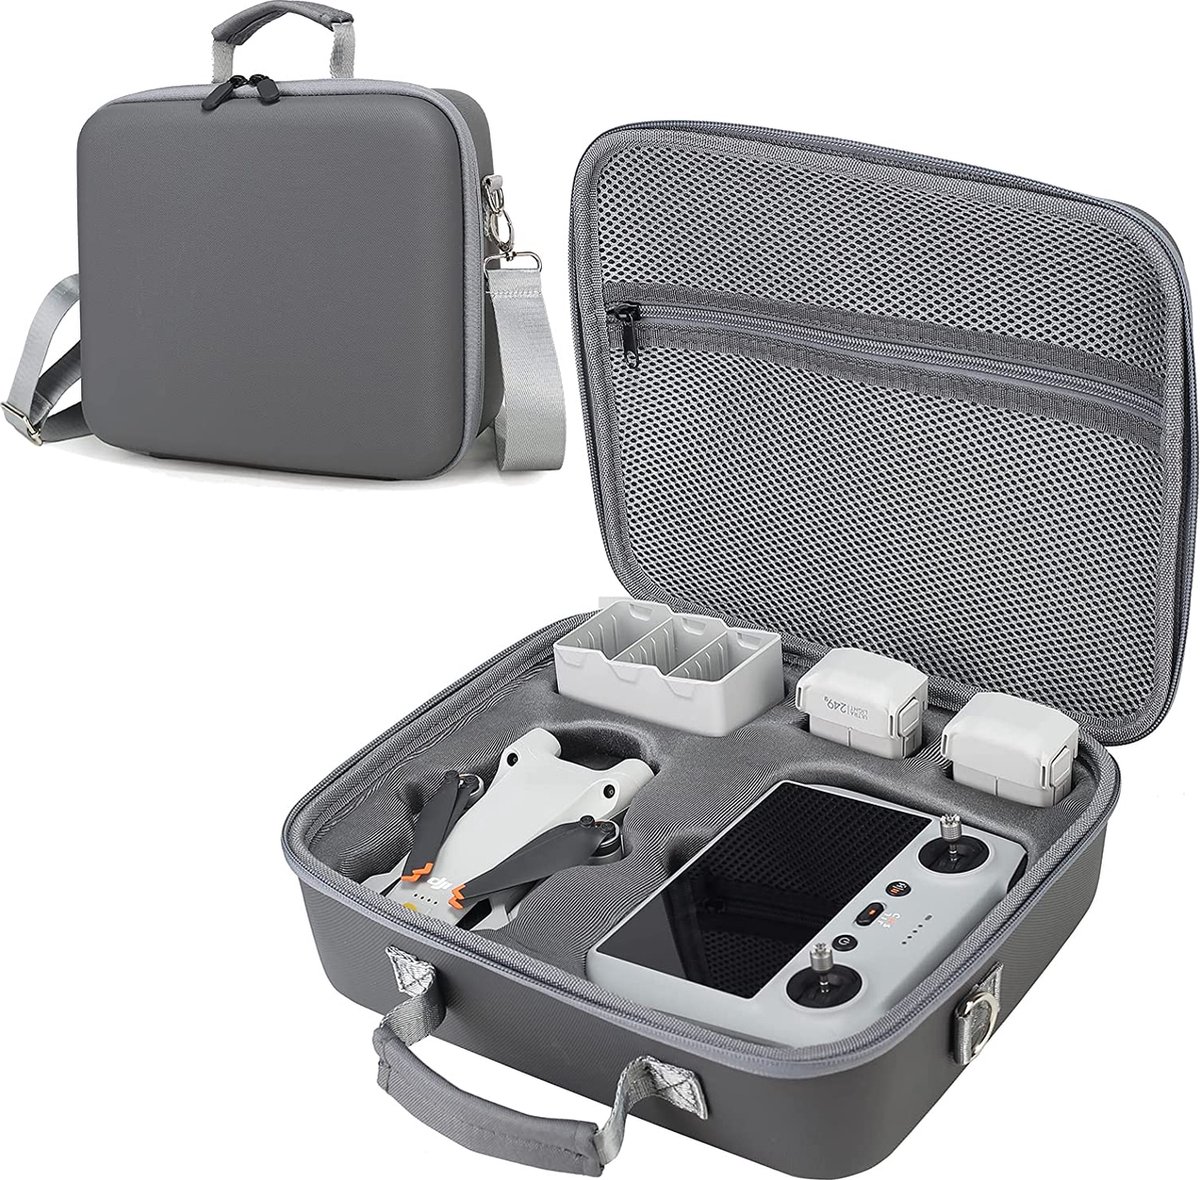 Mini 3 Pro draagtas, opbergtas voor DJI Mini 3 Pro drones, draagbare draagtas voor DJI Mini 3 Pro en accessoires, compatibel met DJI RC/DJI RC-N1 afstandsbediening